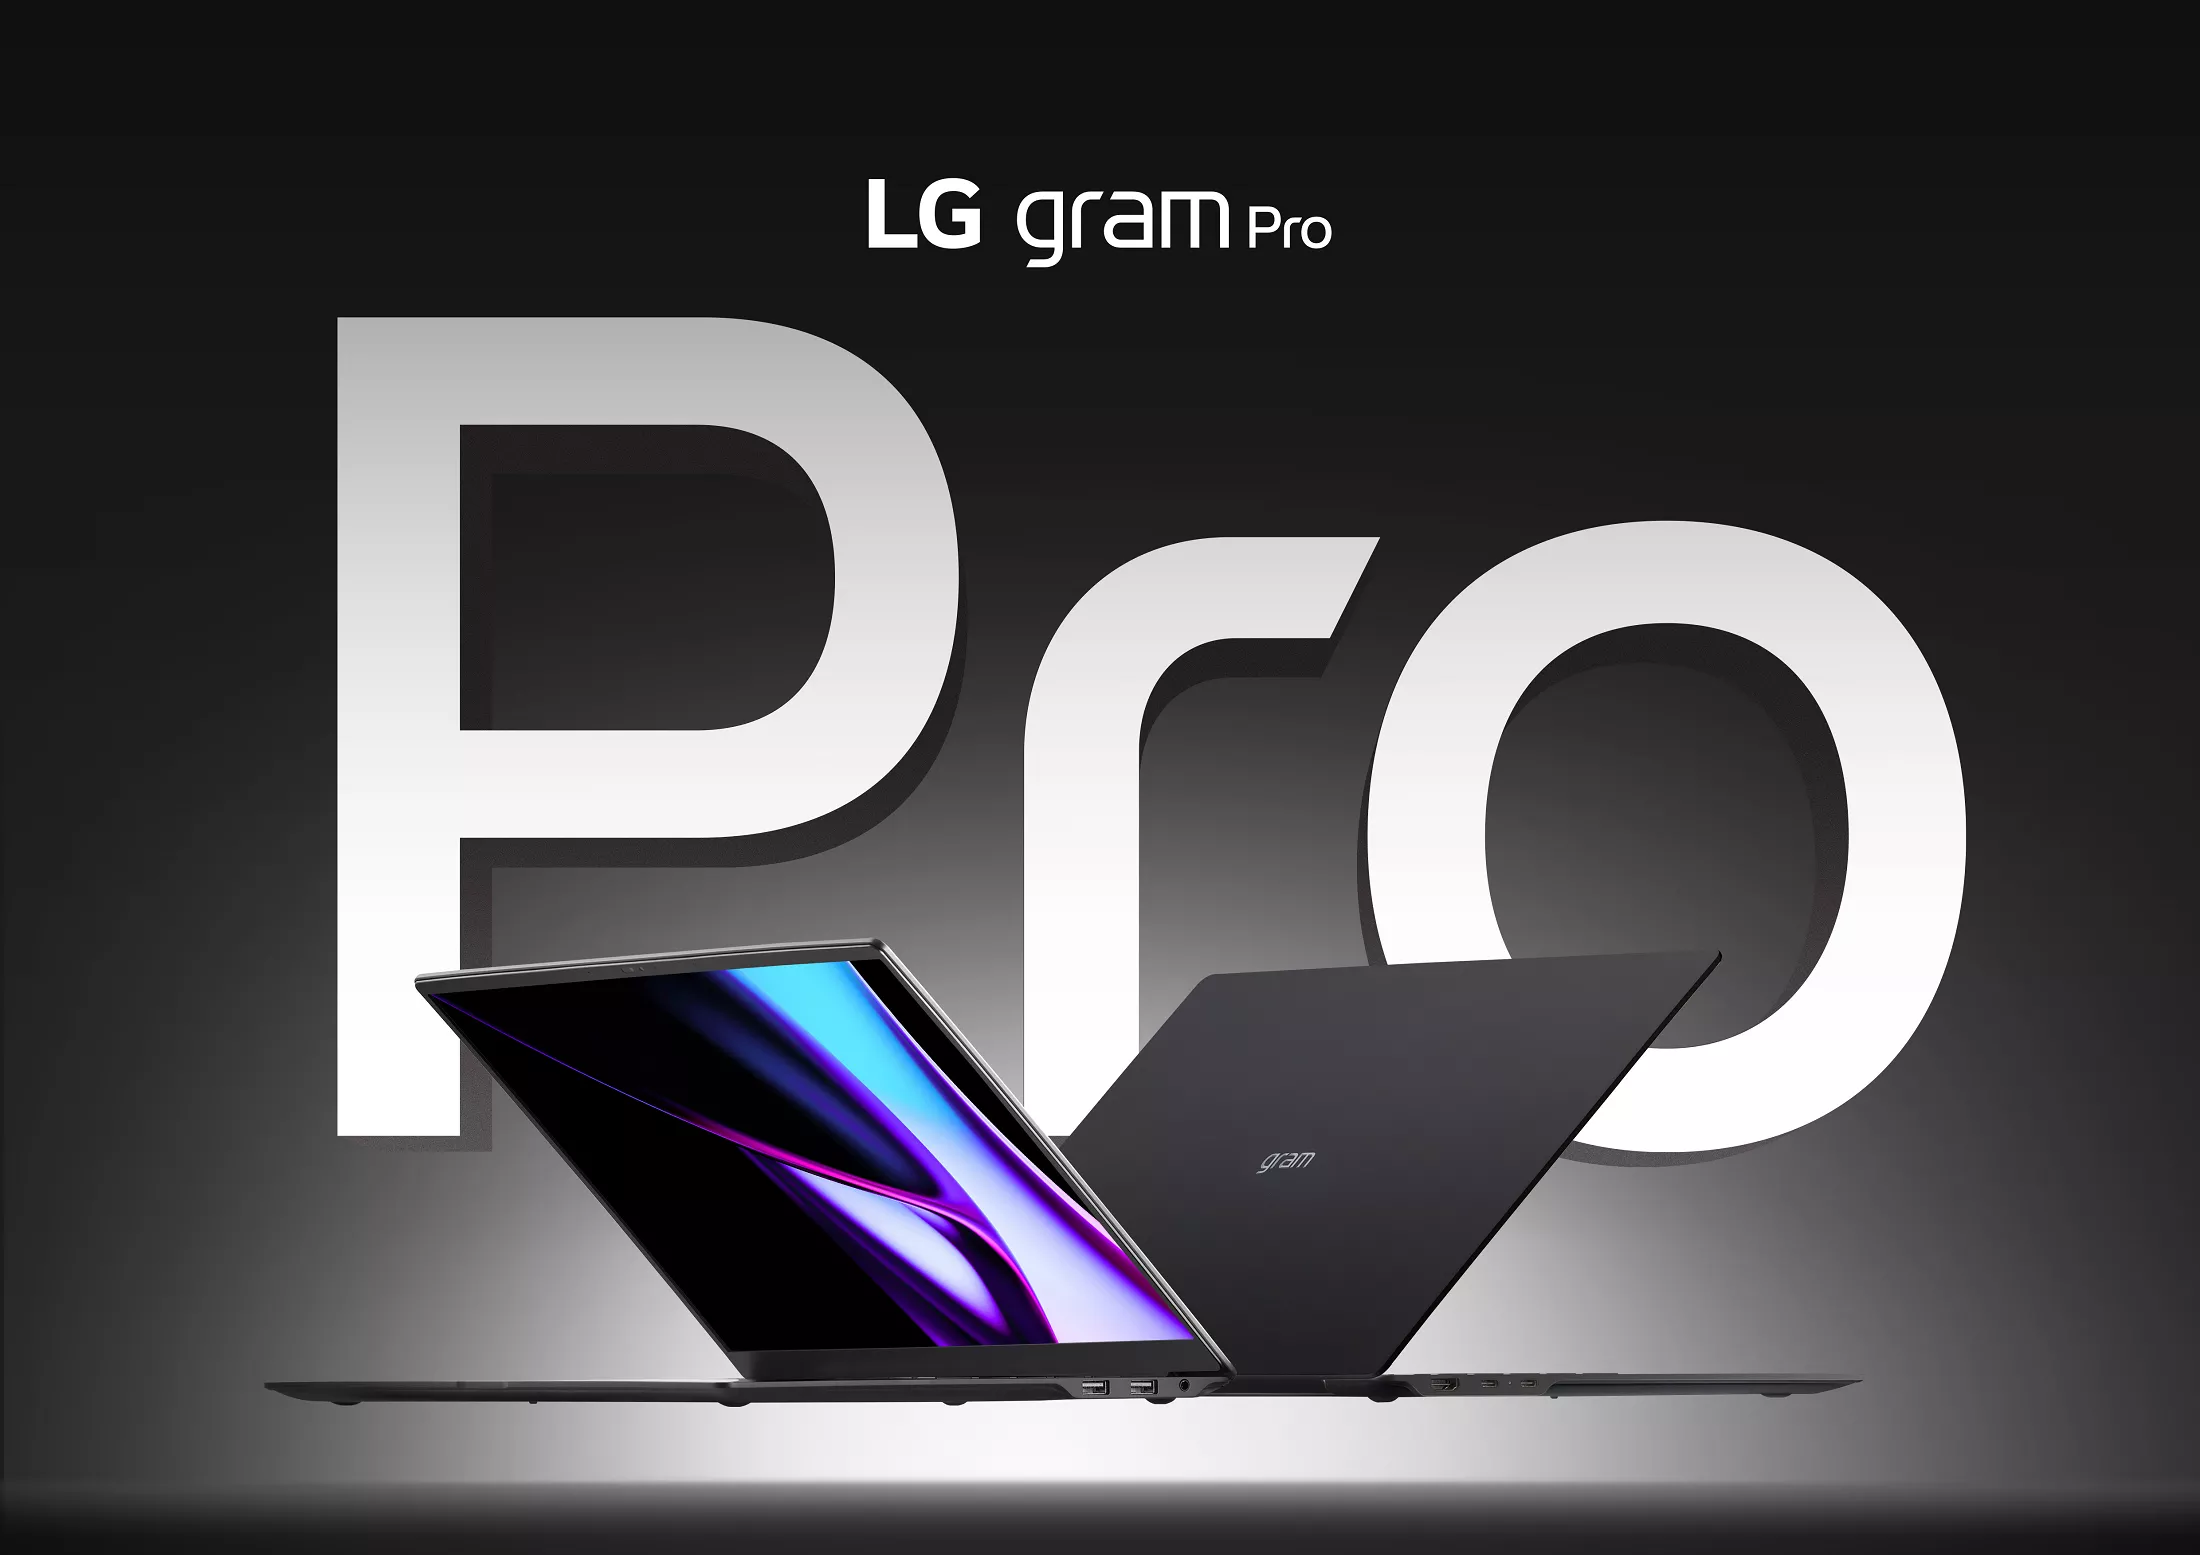 Las nuevas computadoras portátiles ultraligeras Gram Pro de LG incluyen procesamiento de IA integrado